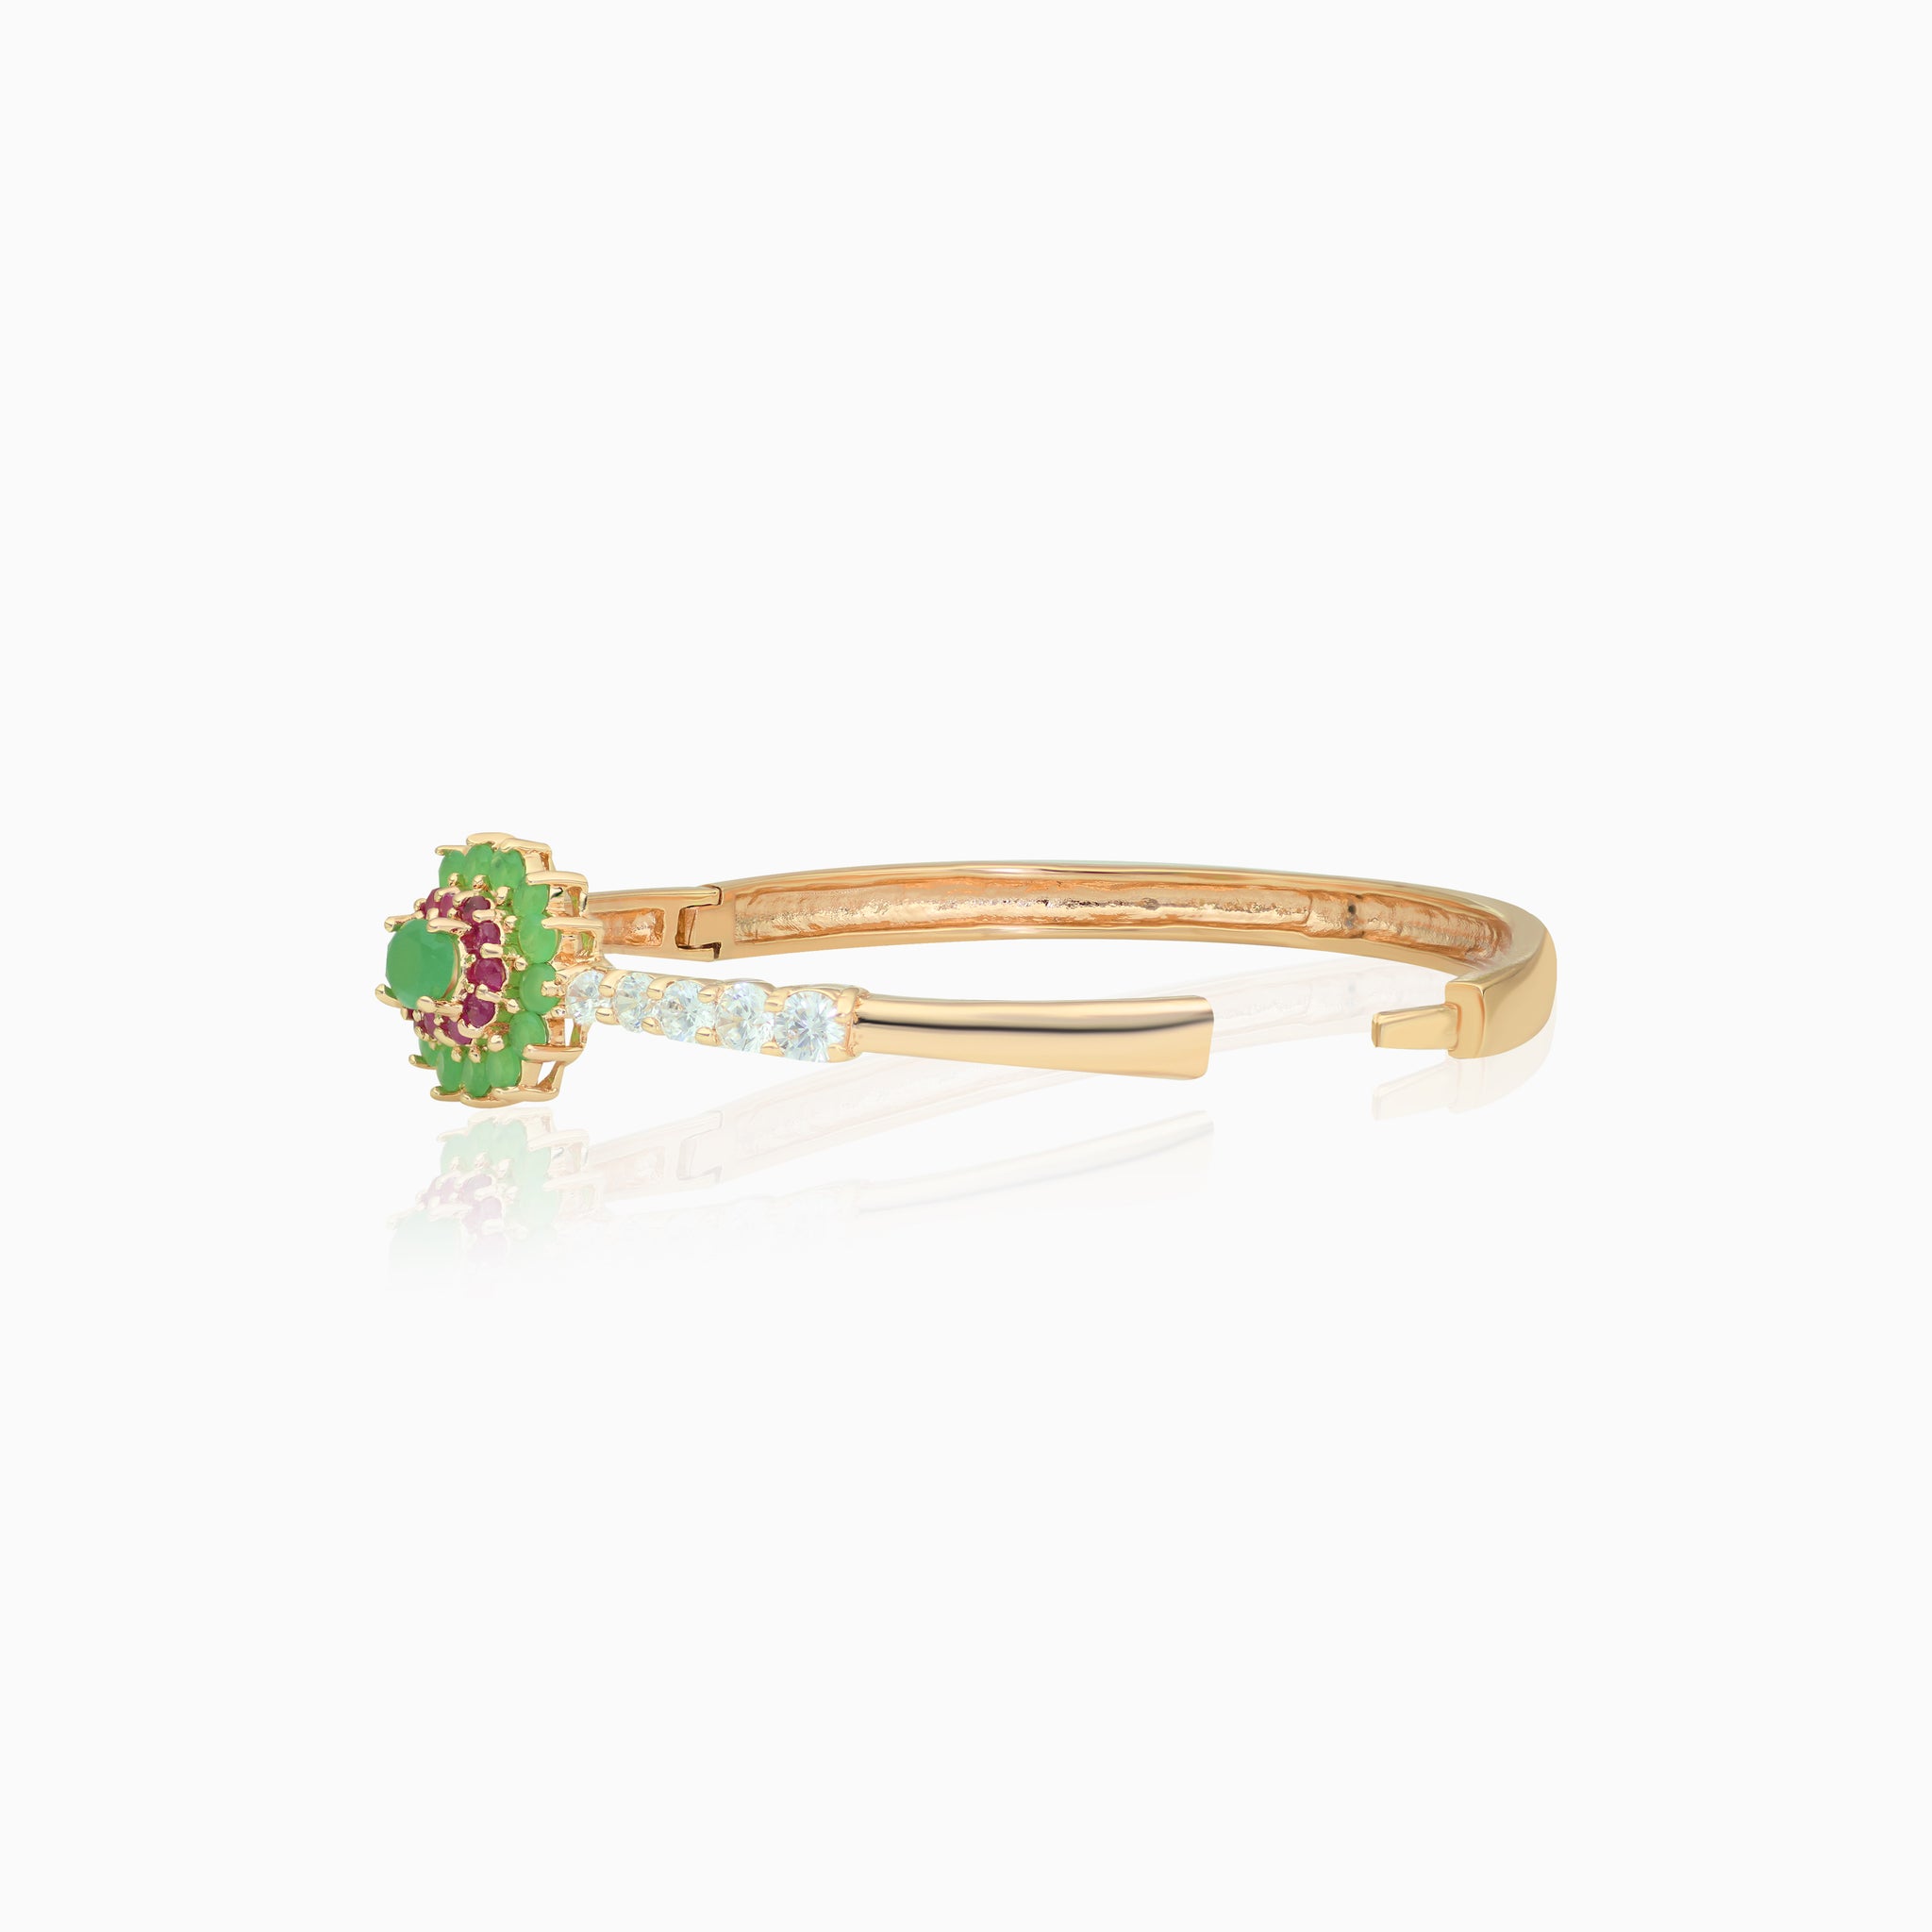 Green Flower Bracelet